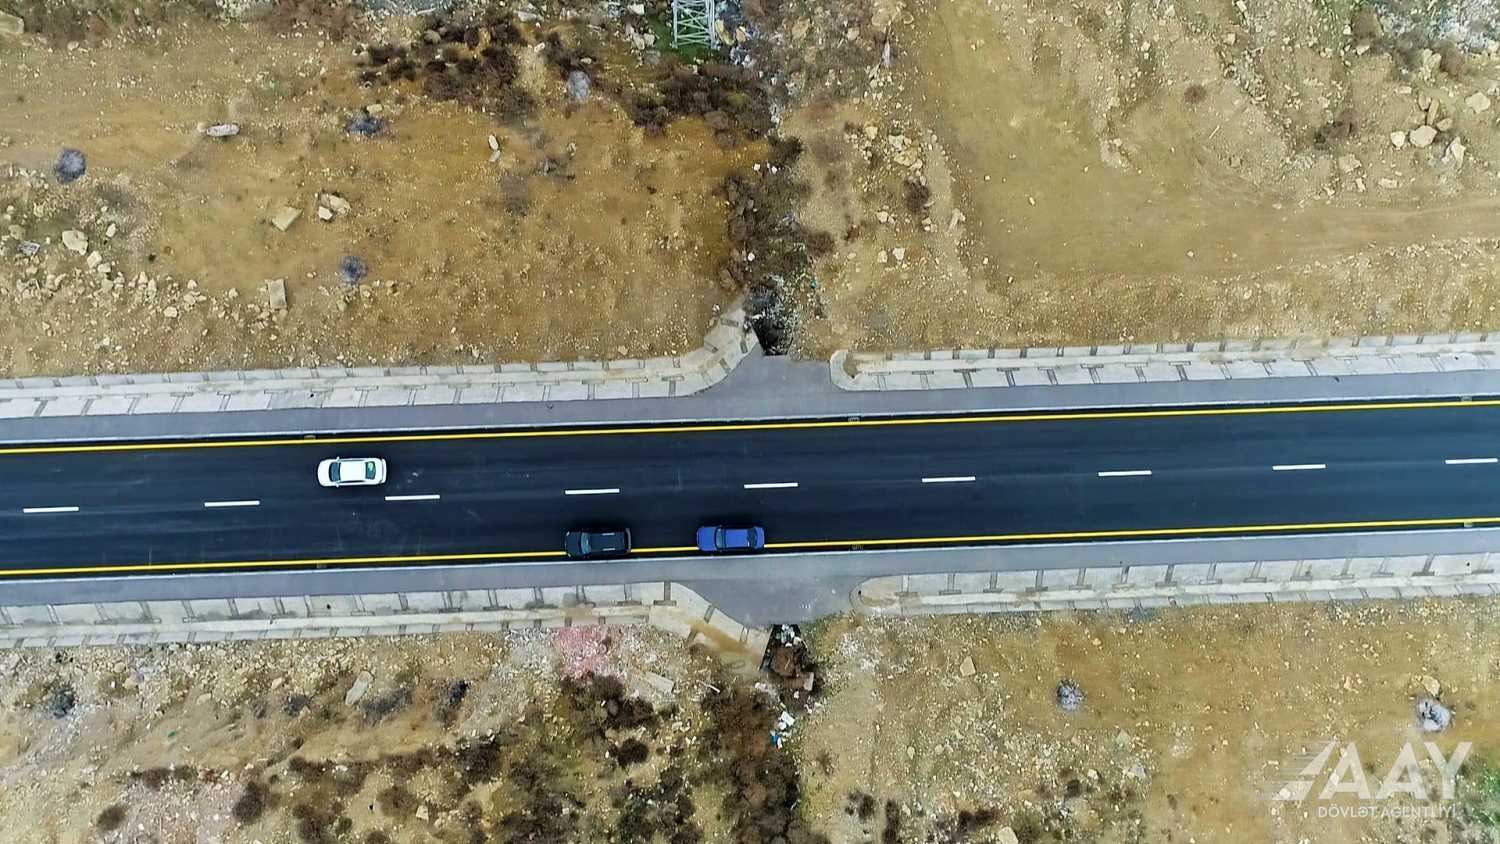 AAYDA MİDA-nın sifarişi ilə Yasamalda yeni avtomobil yolu inşa edib (FOTO/VİDEO)